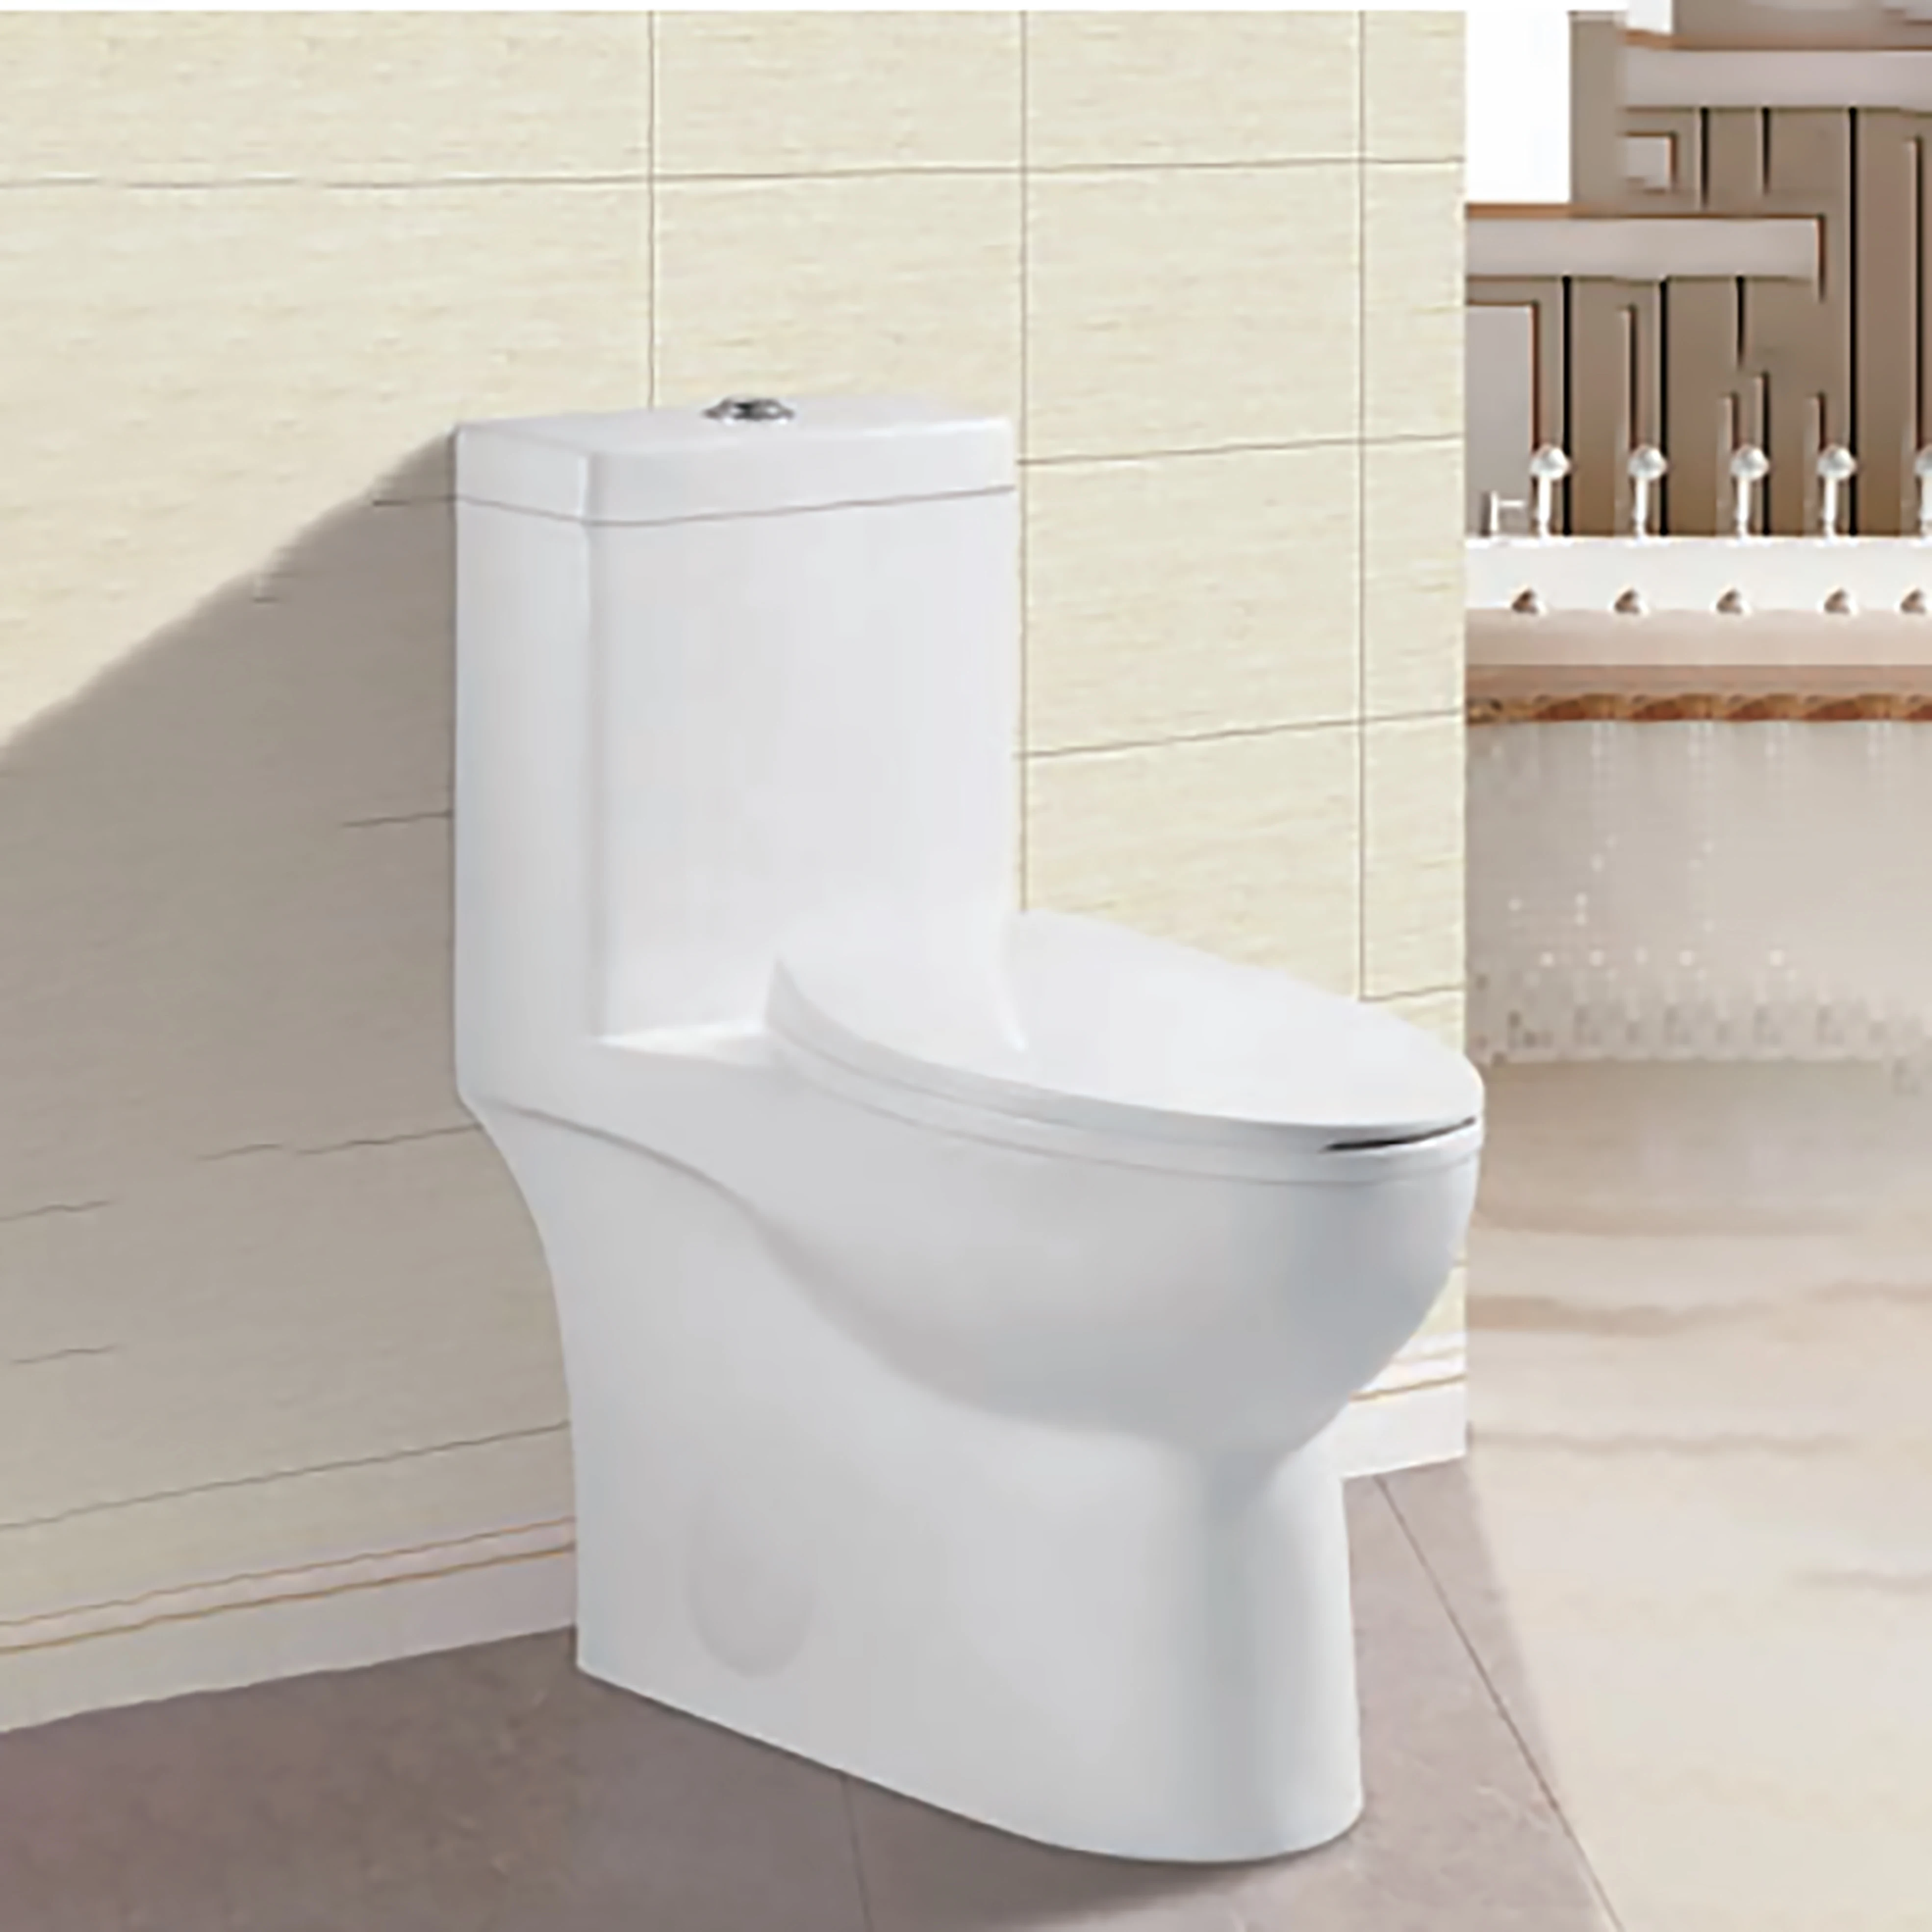 セルフクリーニング釉薬サイフォンフラッシング衛生陶器ワンピース伝統的なトイレ Buy 伝統的なトイレ 衛生陶器ワンピーストイレ 自己洗浄トイレ Product On Alibaba Com